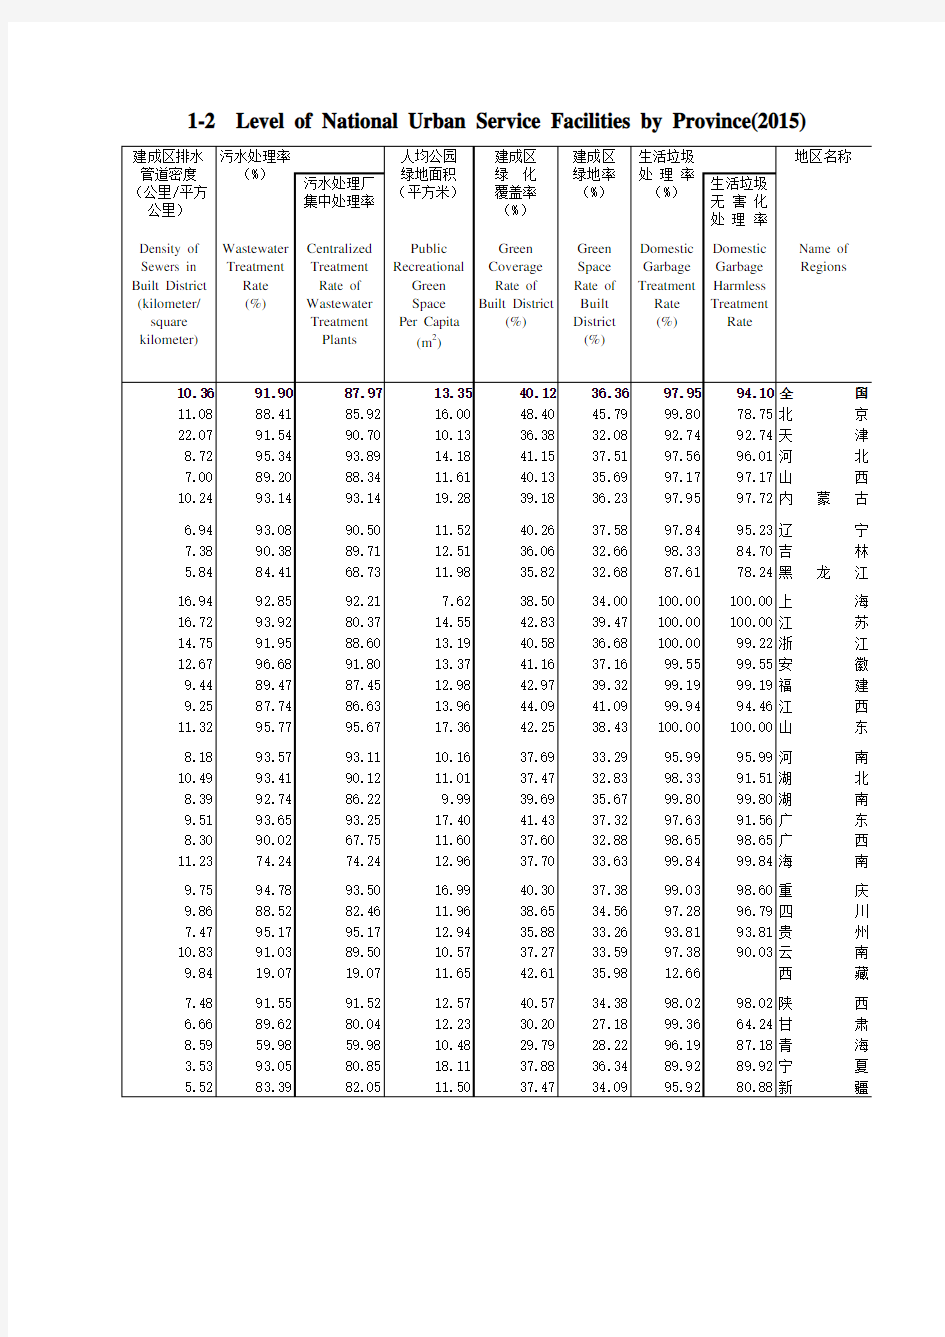 中国城市建设统计年鉴1-2 2015年全国城市市政公用设施水平(按省分列)